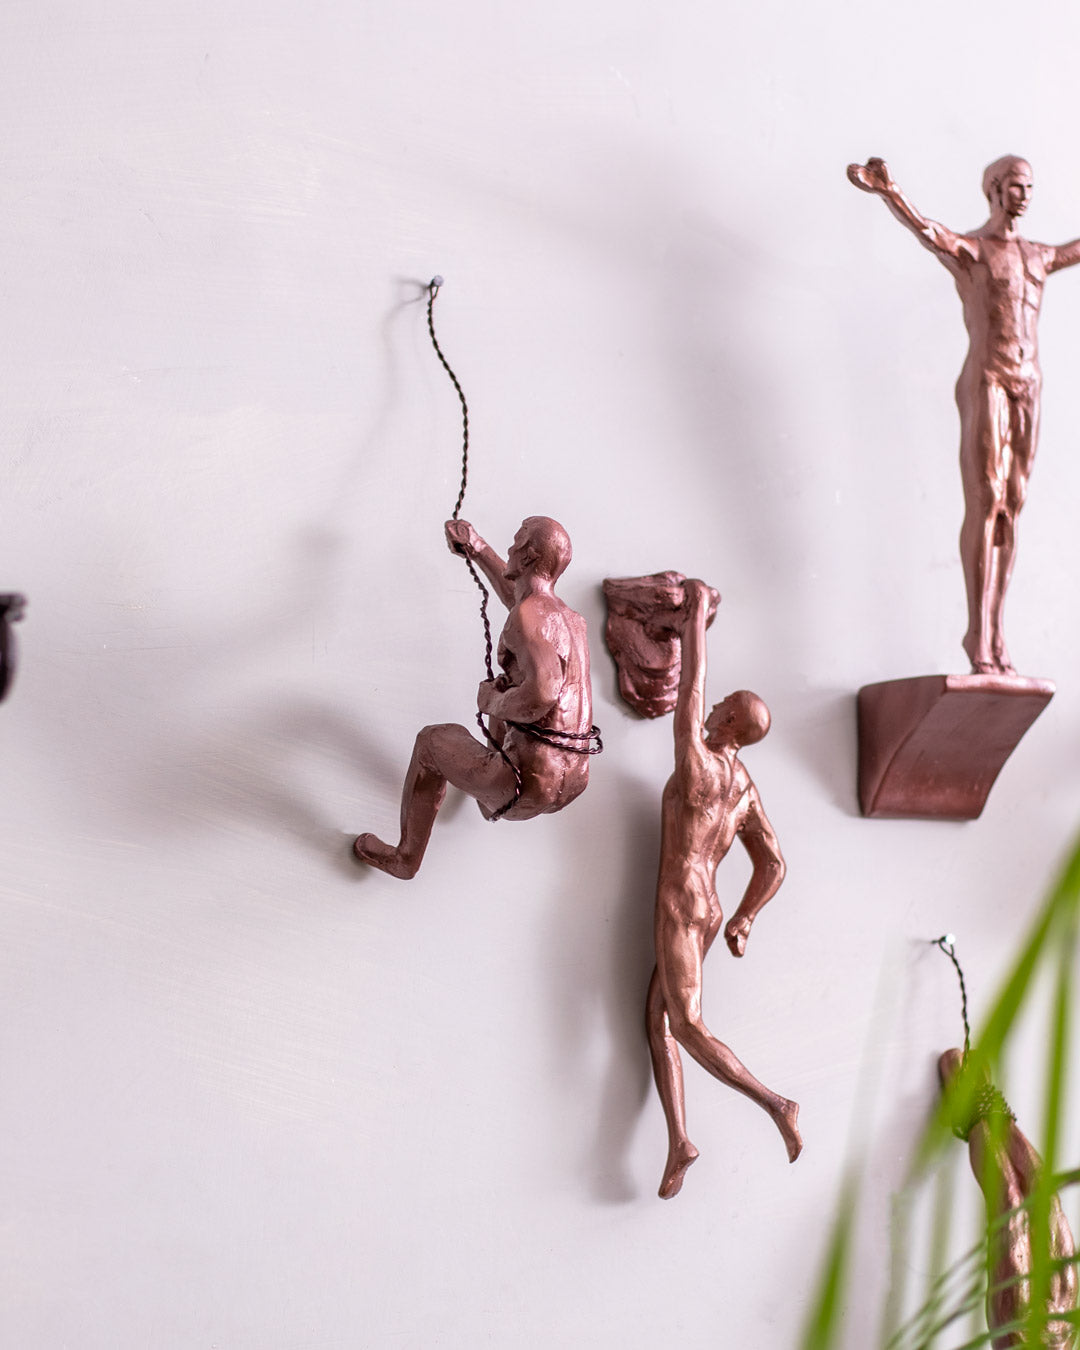 Wall-Climber Men Figures 6 Different Sculpture